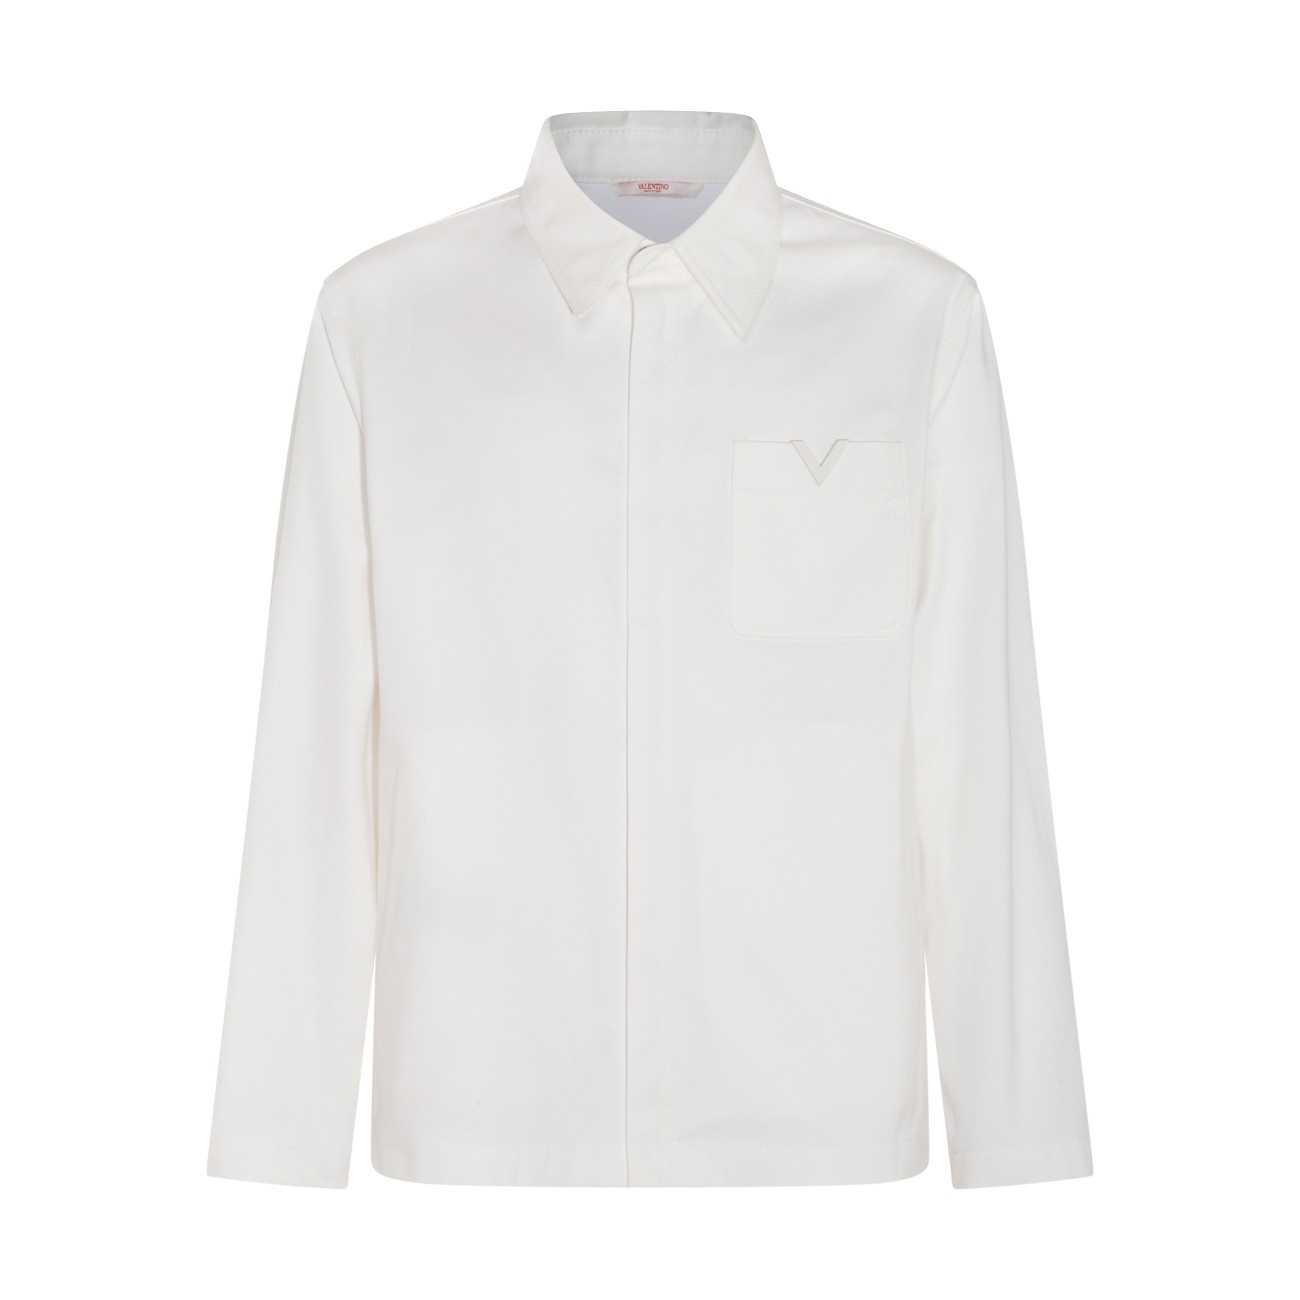 white cotton blend shirt - 1